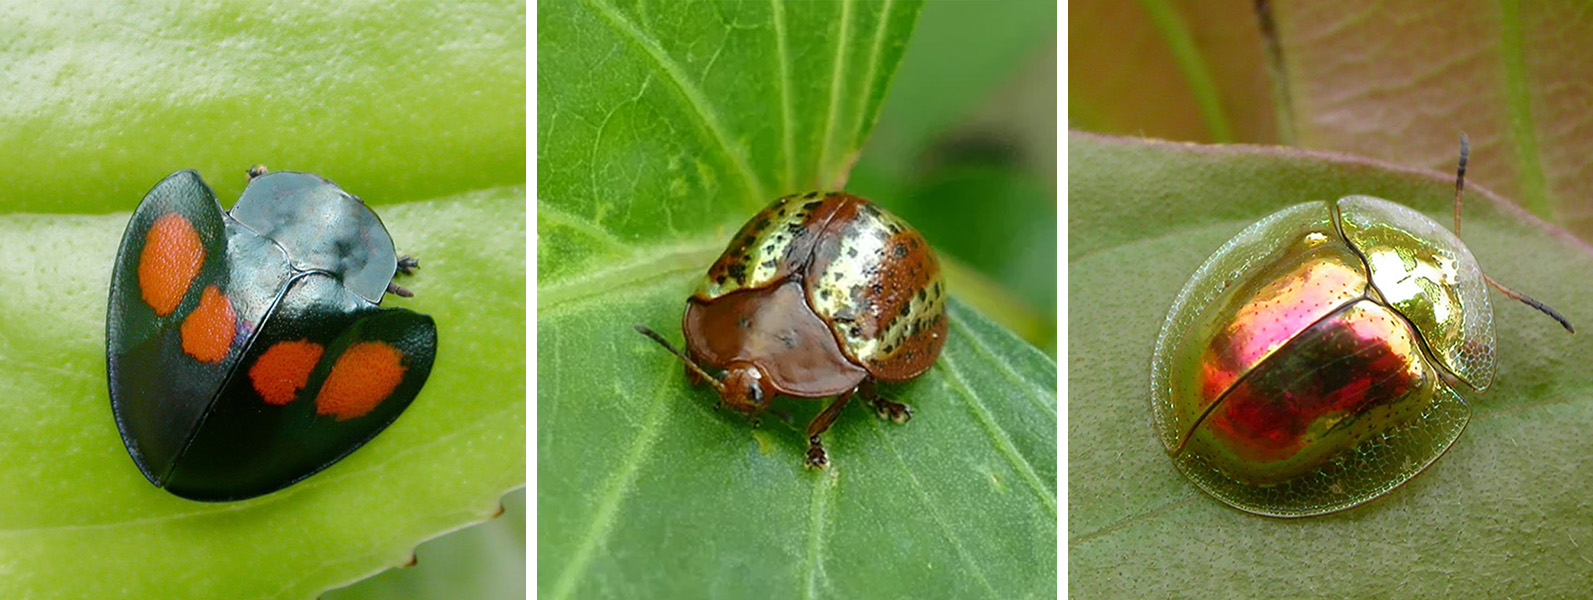 Tres fotos muestran insectos voladores pequeños, redondos y posados sobre hojas verdes.